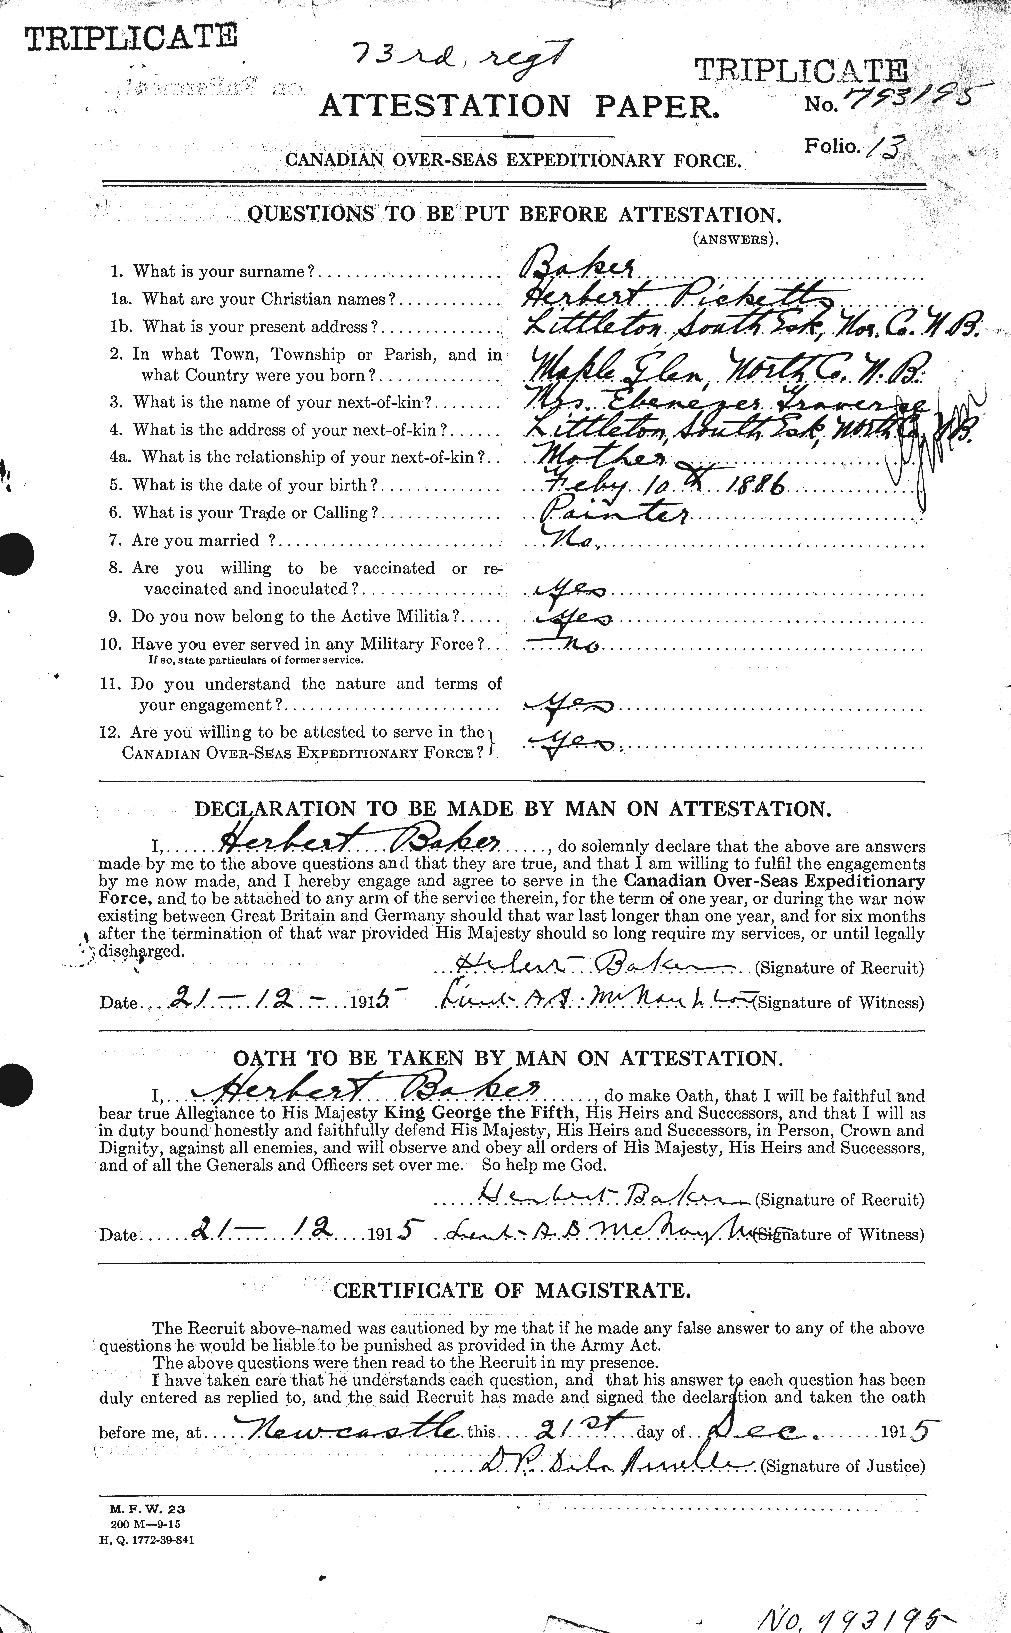 Dossiers du Personnel de la Première Guerre mondiale - CEC 216110a